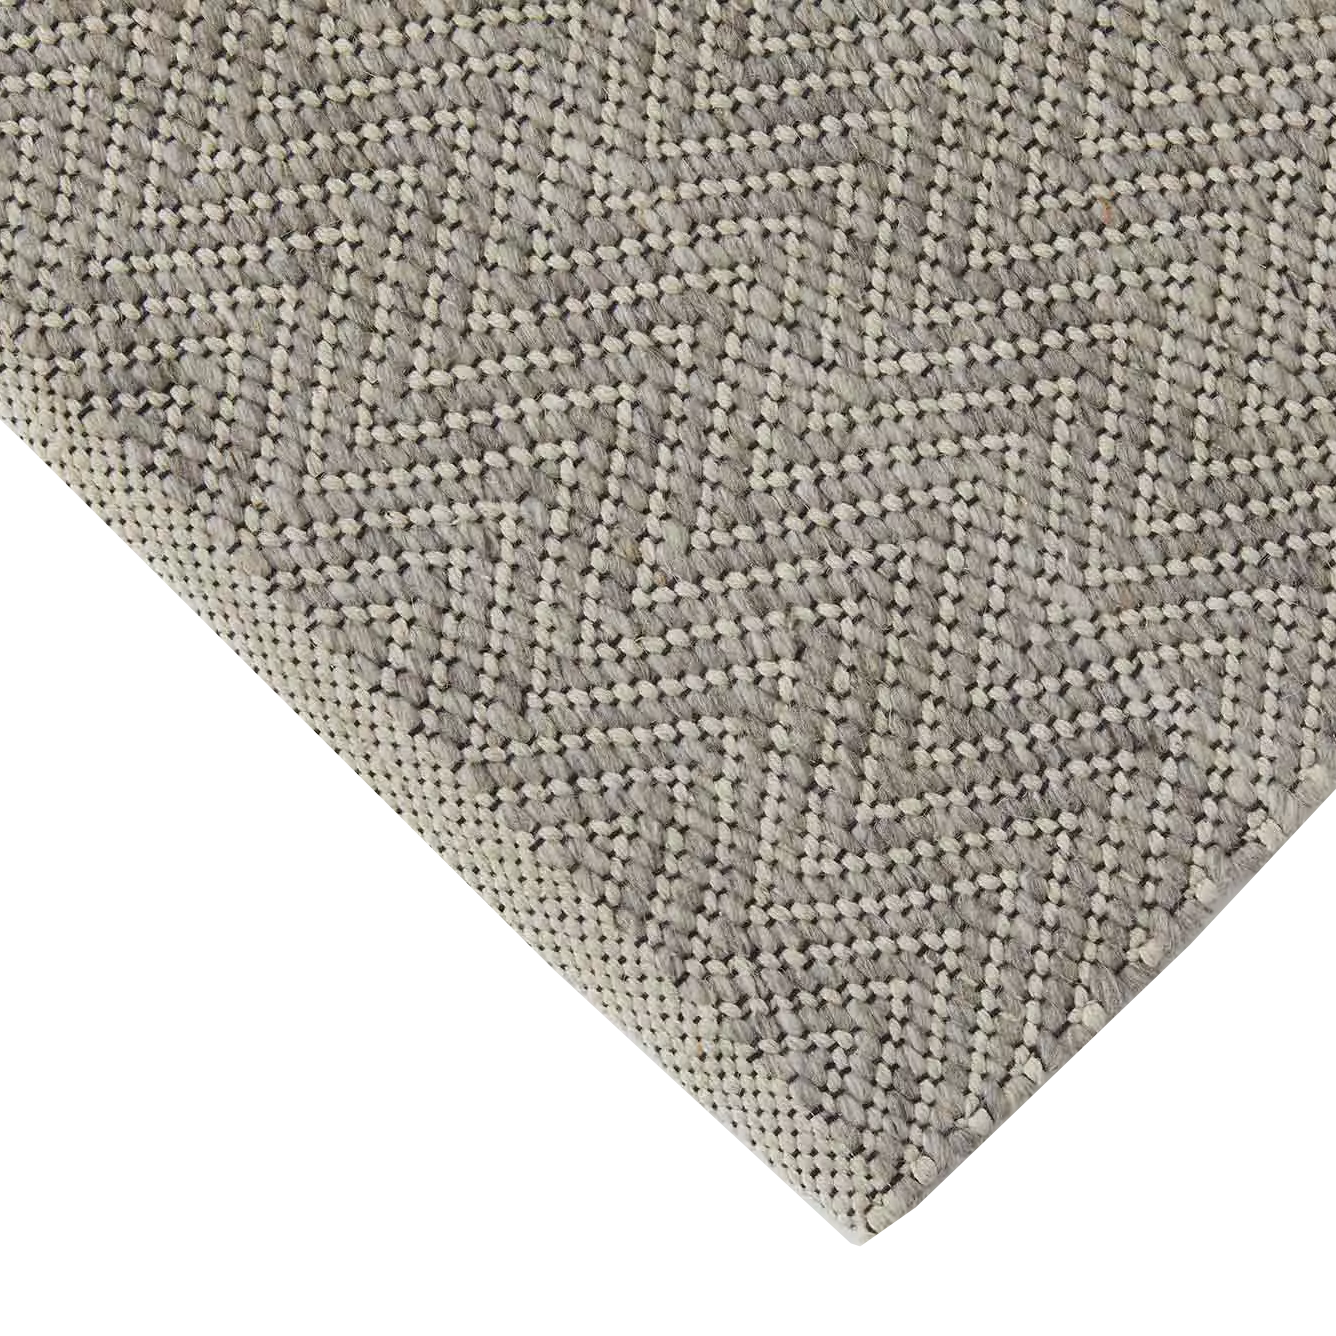 Weave Matterhorn wool rug basalt 200 x 300cm